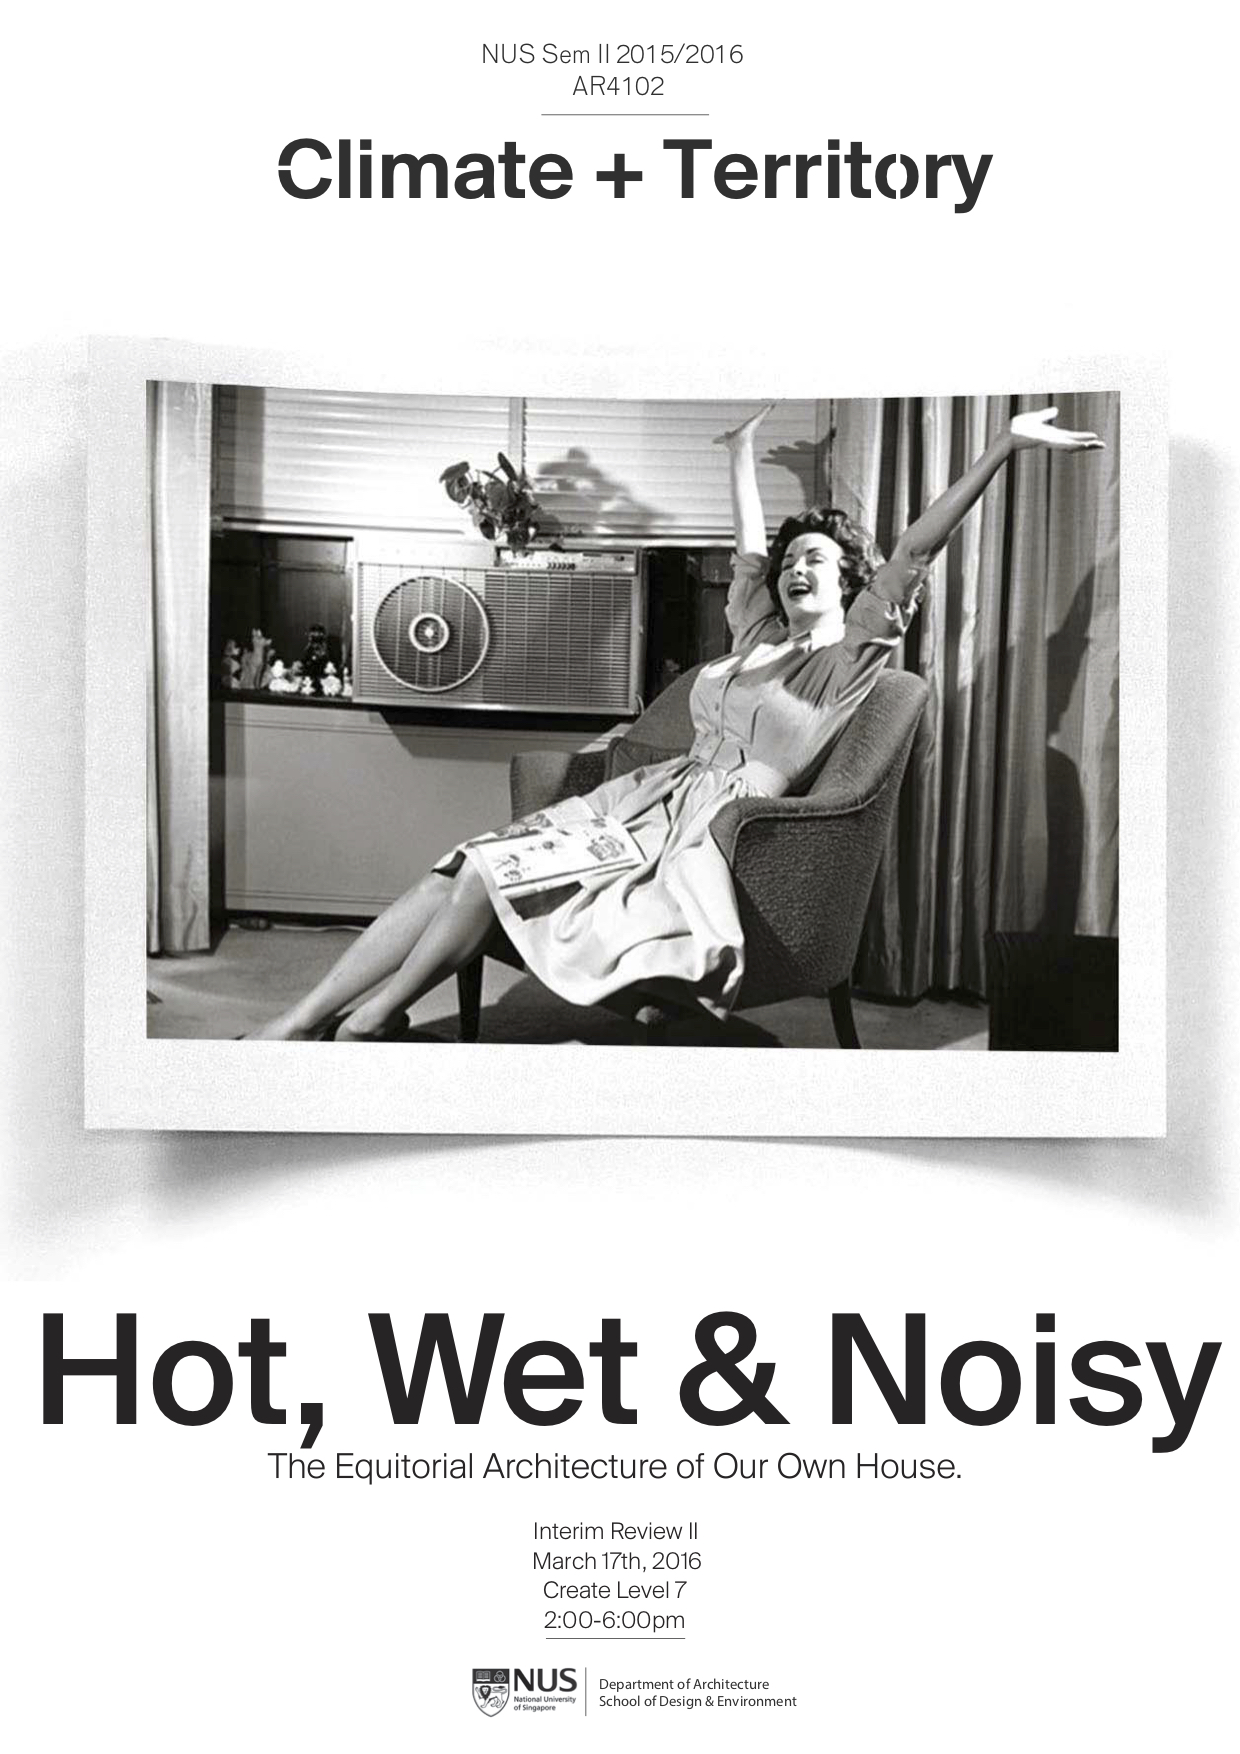 Hot, Wet & Noisy